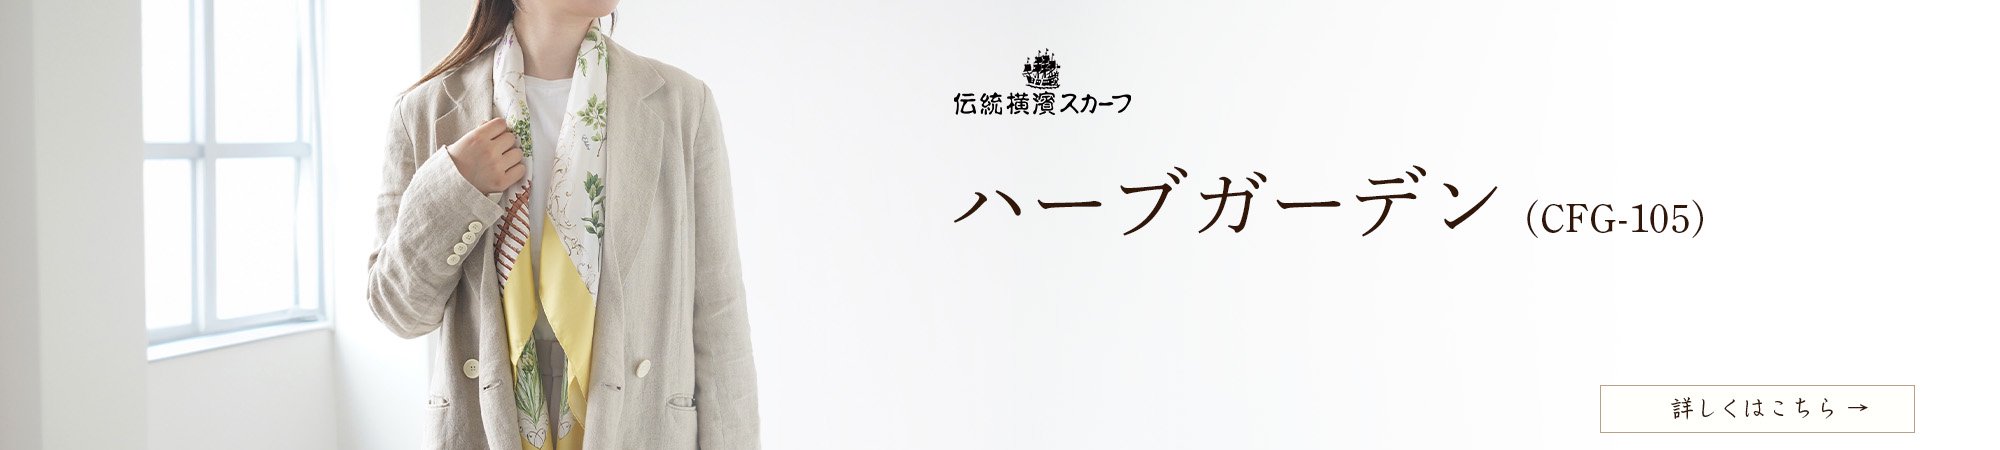 伝統横濱スカーフMarca(マルカ) 公式オンラインストア スカーフ専門店 